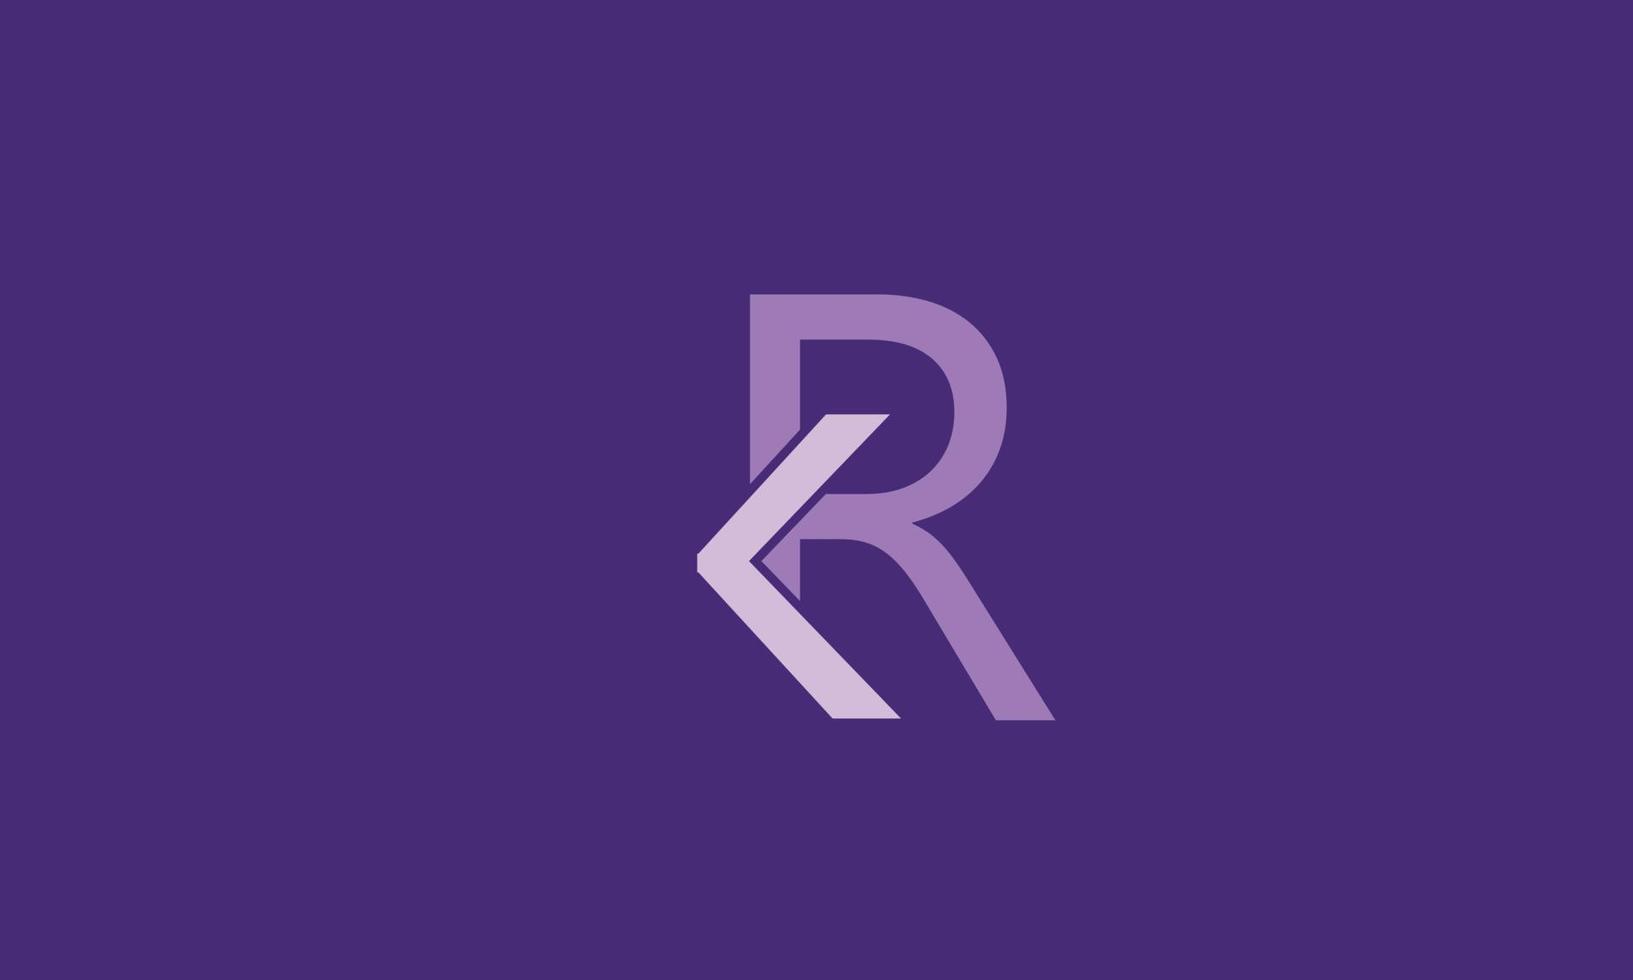 letras do alfabeto iniciais monograma logotipo kr, rk, ke r vetor